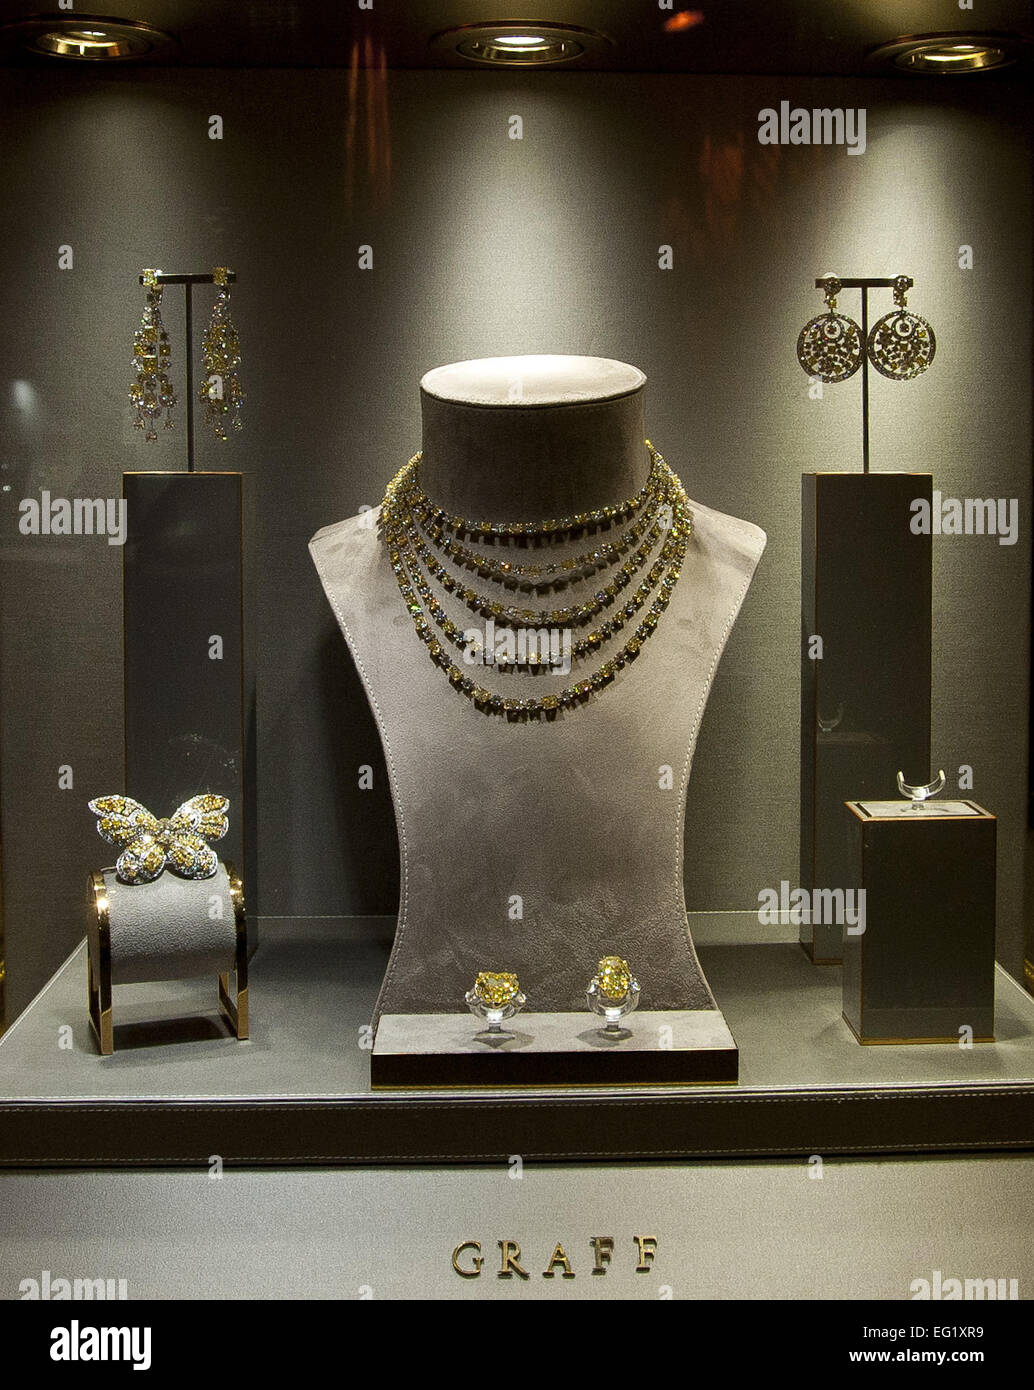 Graff's Second Boutique in Paris Showcases 'Trophy' Jewels